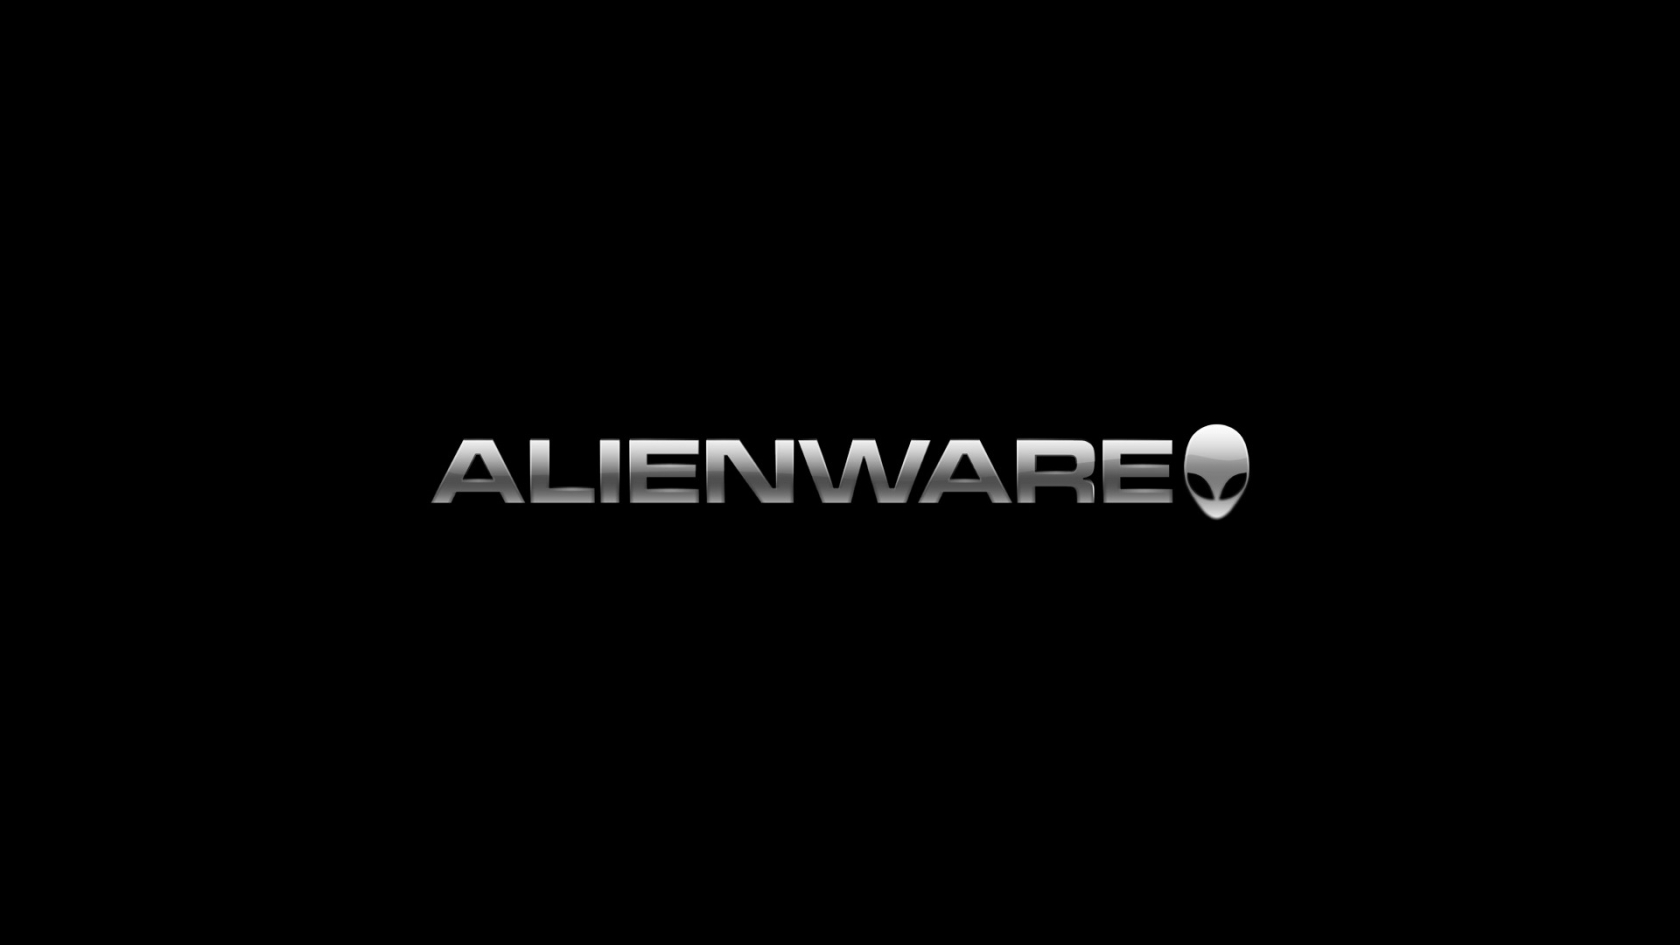 Black Alienware for 1680 x 945 HDTV resolution